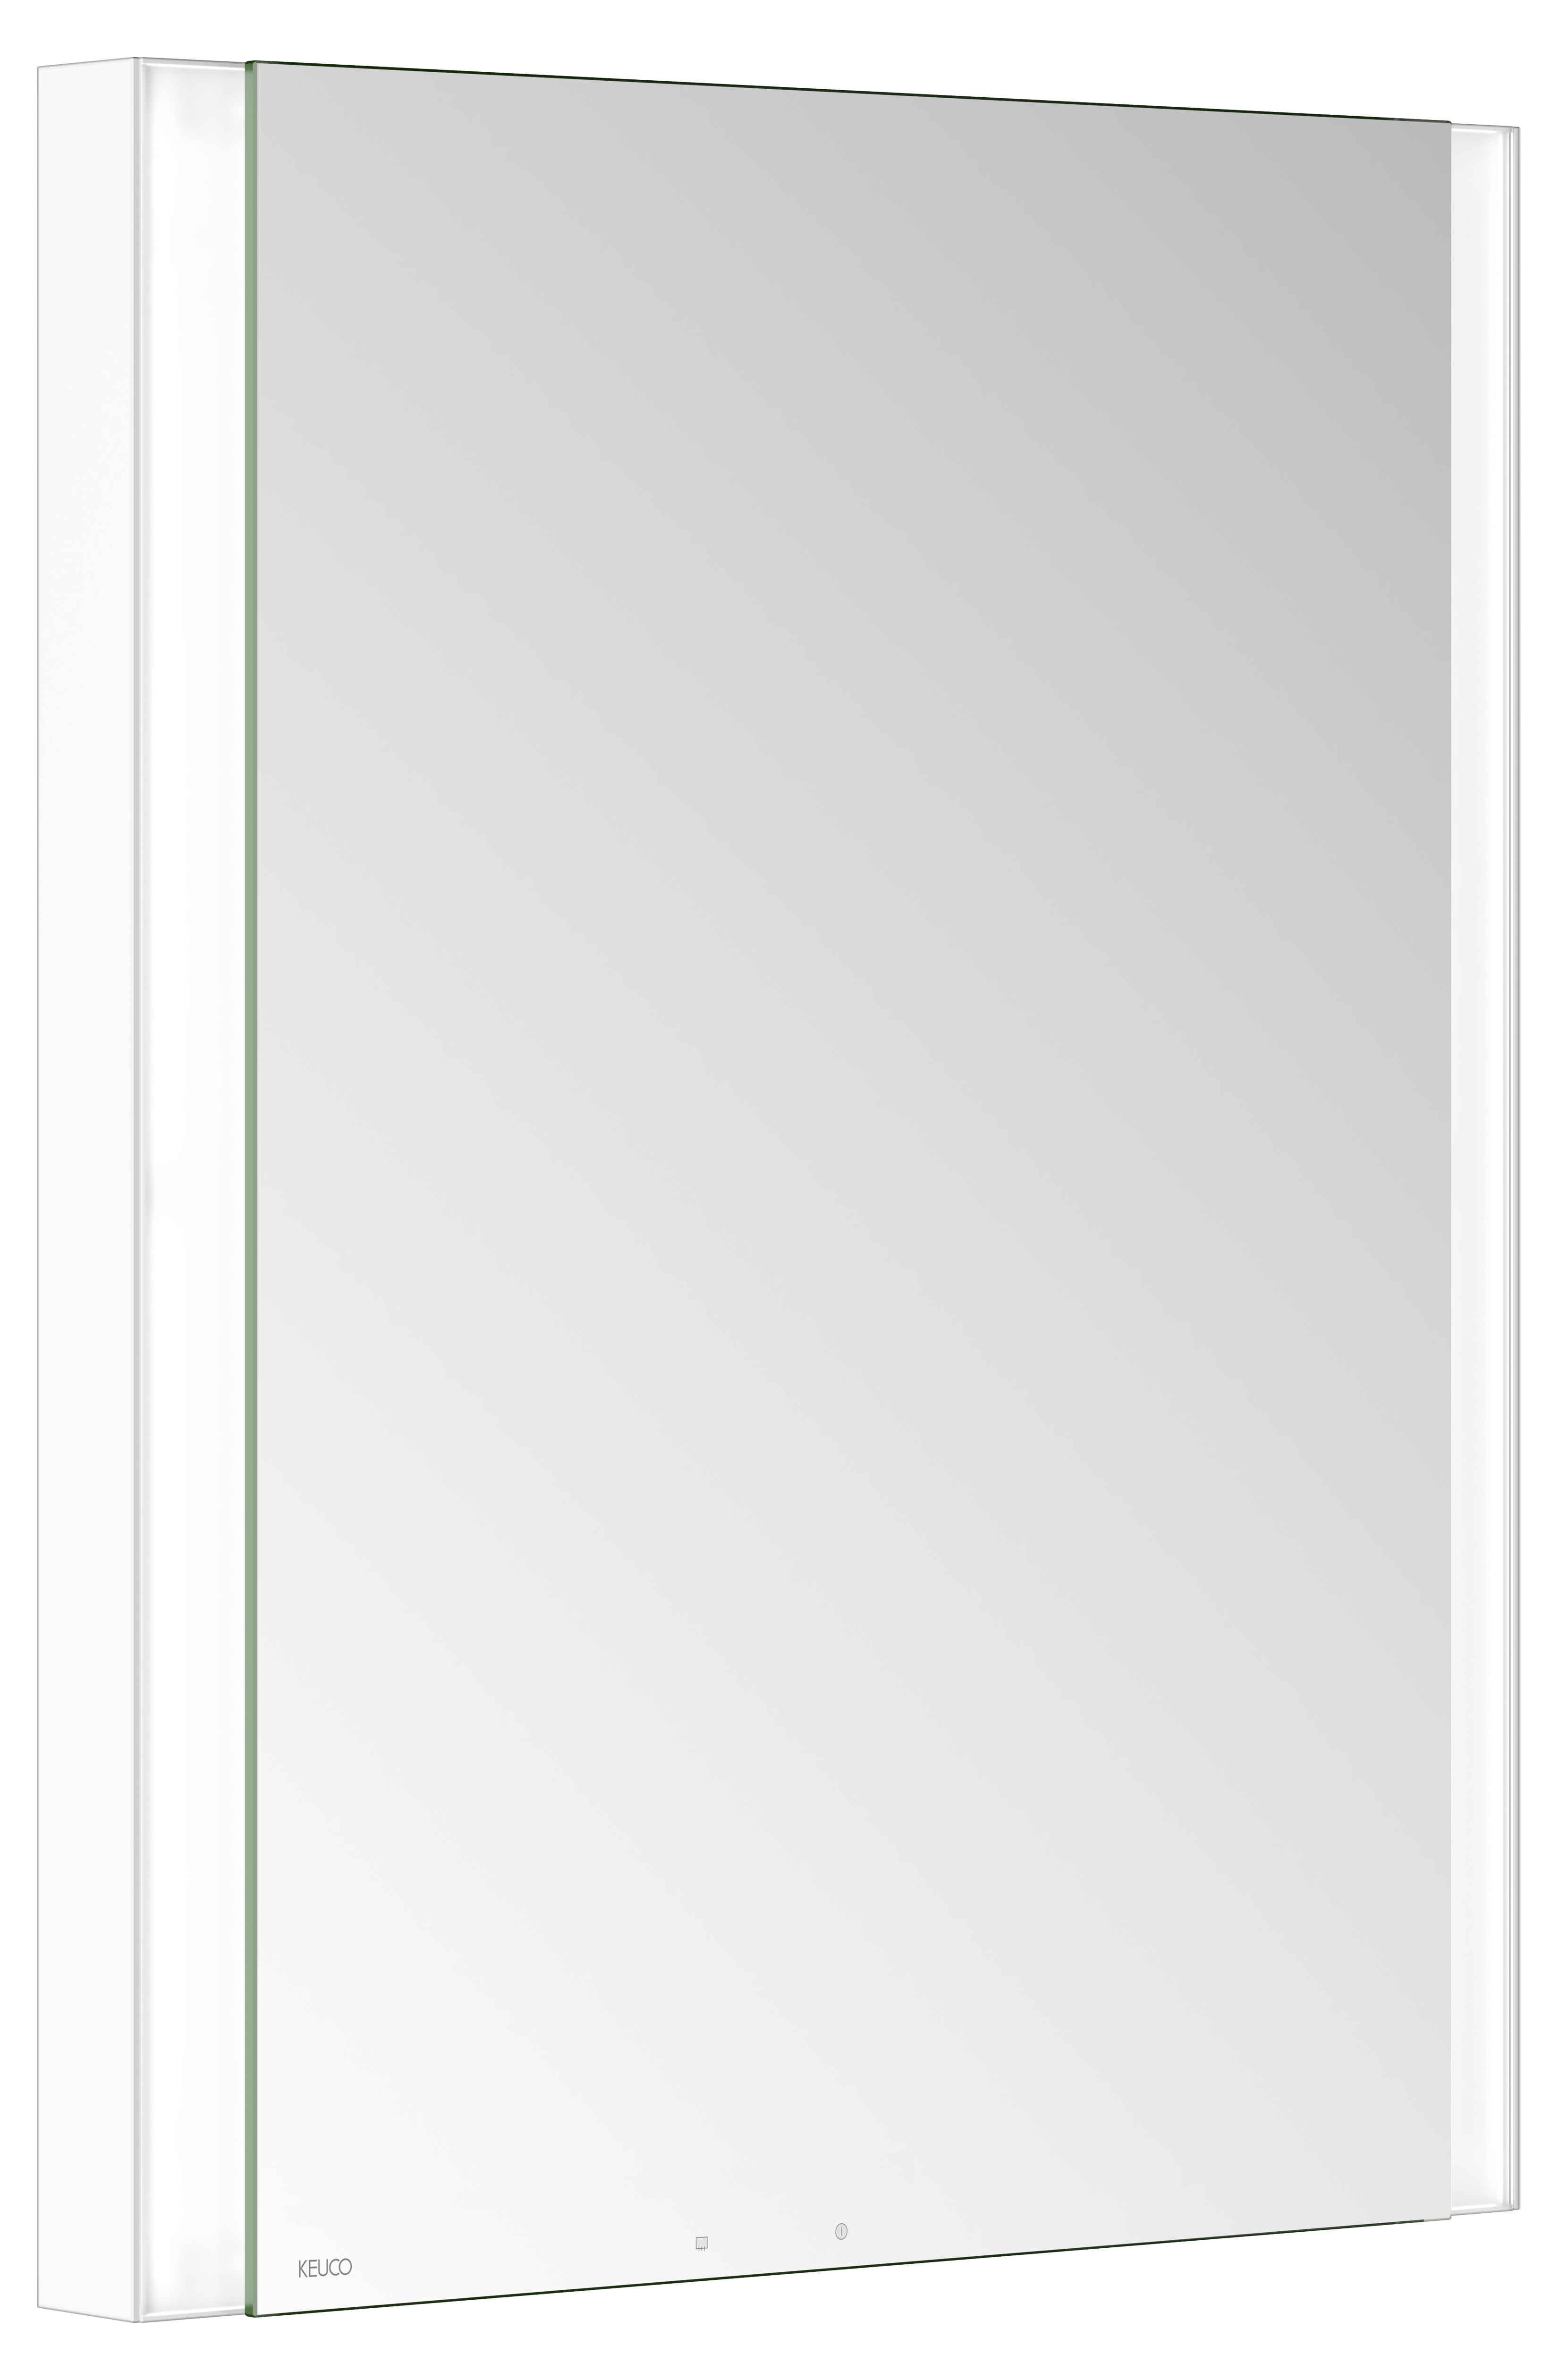 Левый зеркальный шкаф с подсветкой и подогревом для встраиваемого монтажа KEUCO Somaris 14511 511201 115 мм х 600 мм х 710 мм, с 1 поворотной дверцей, цвет корпуса Белый матовый